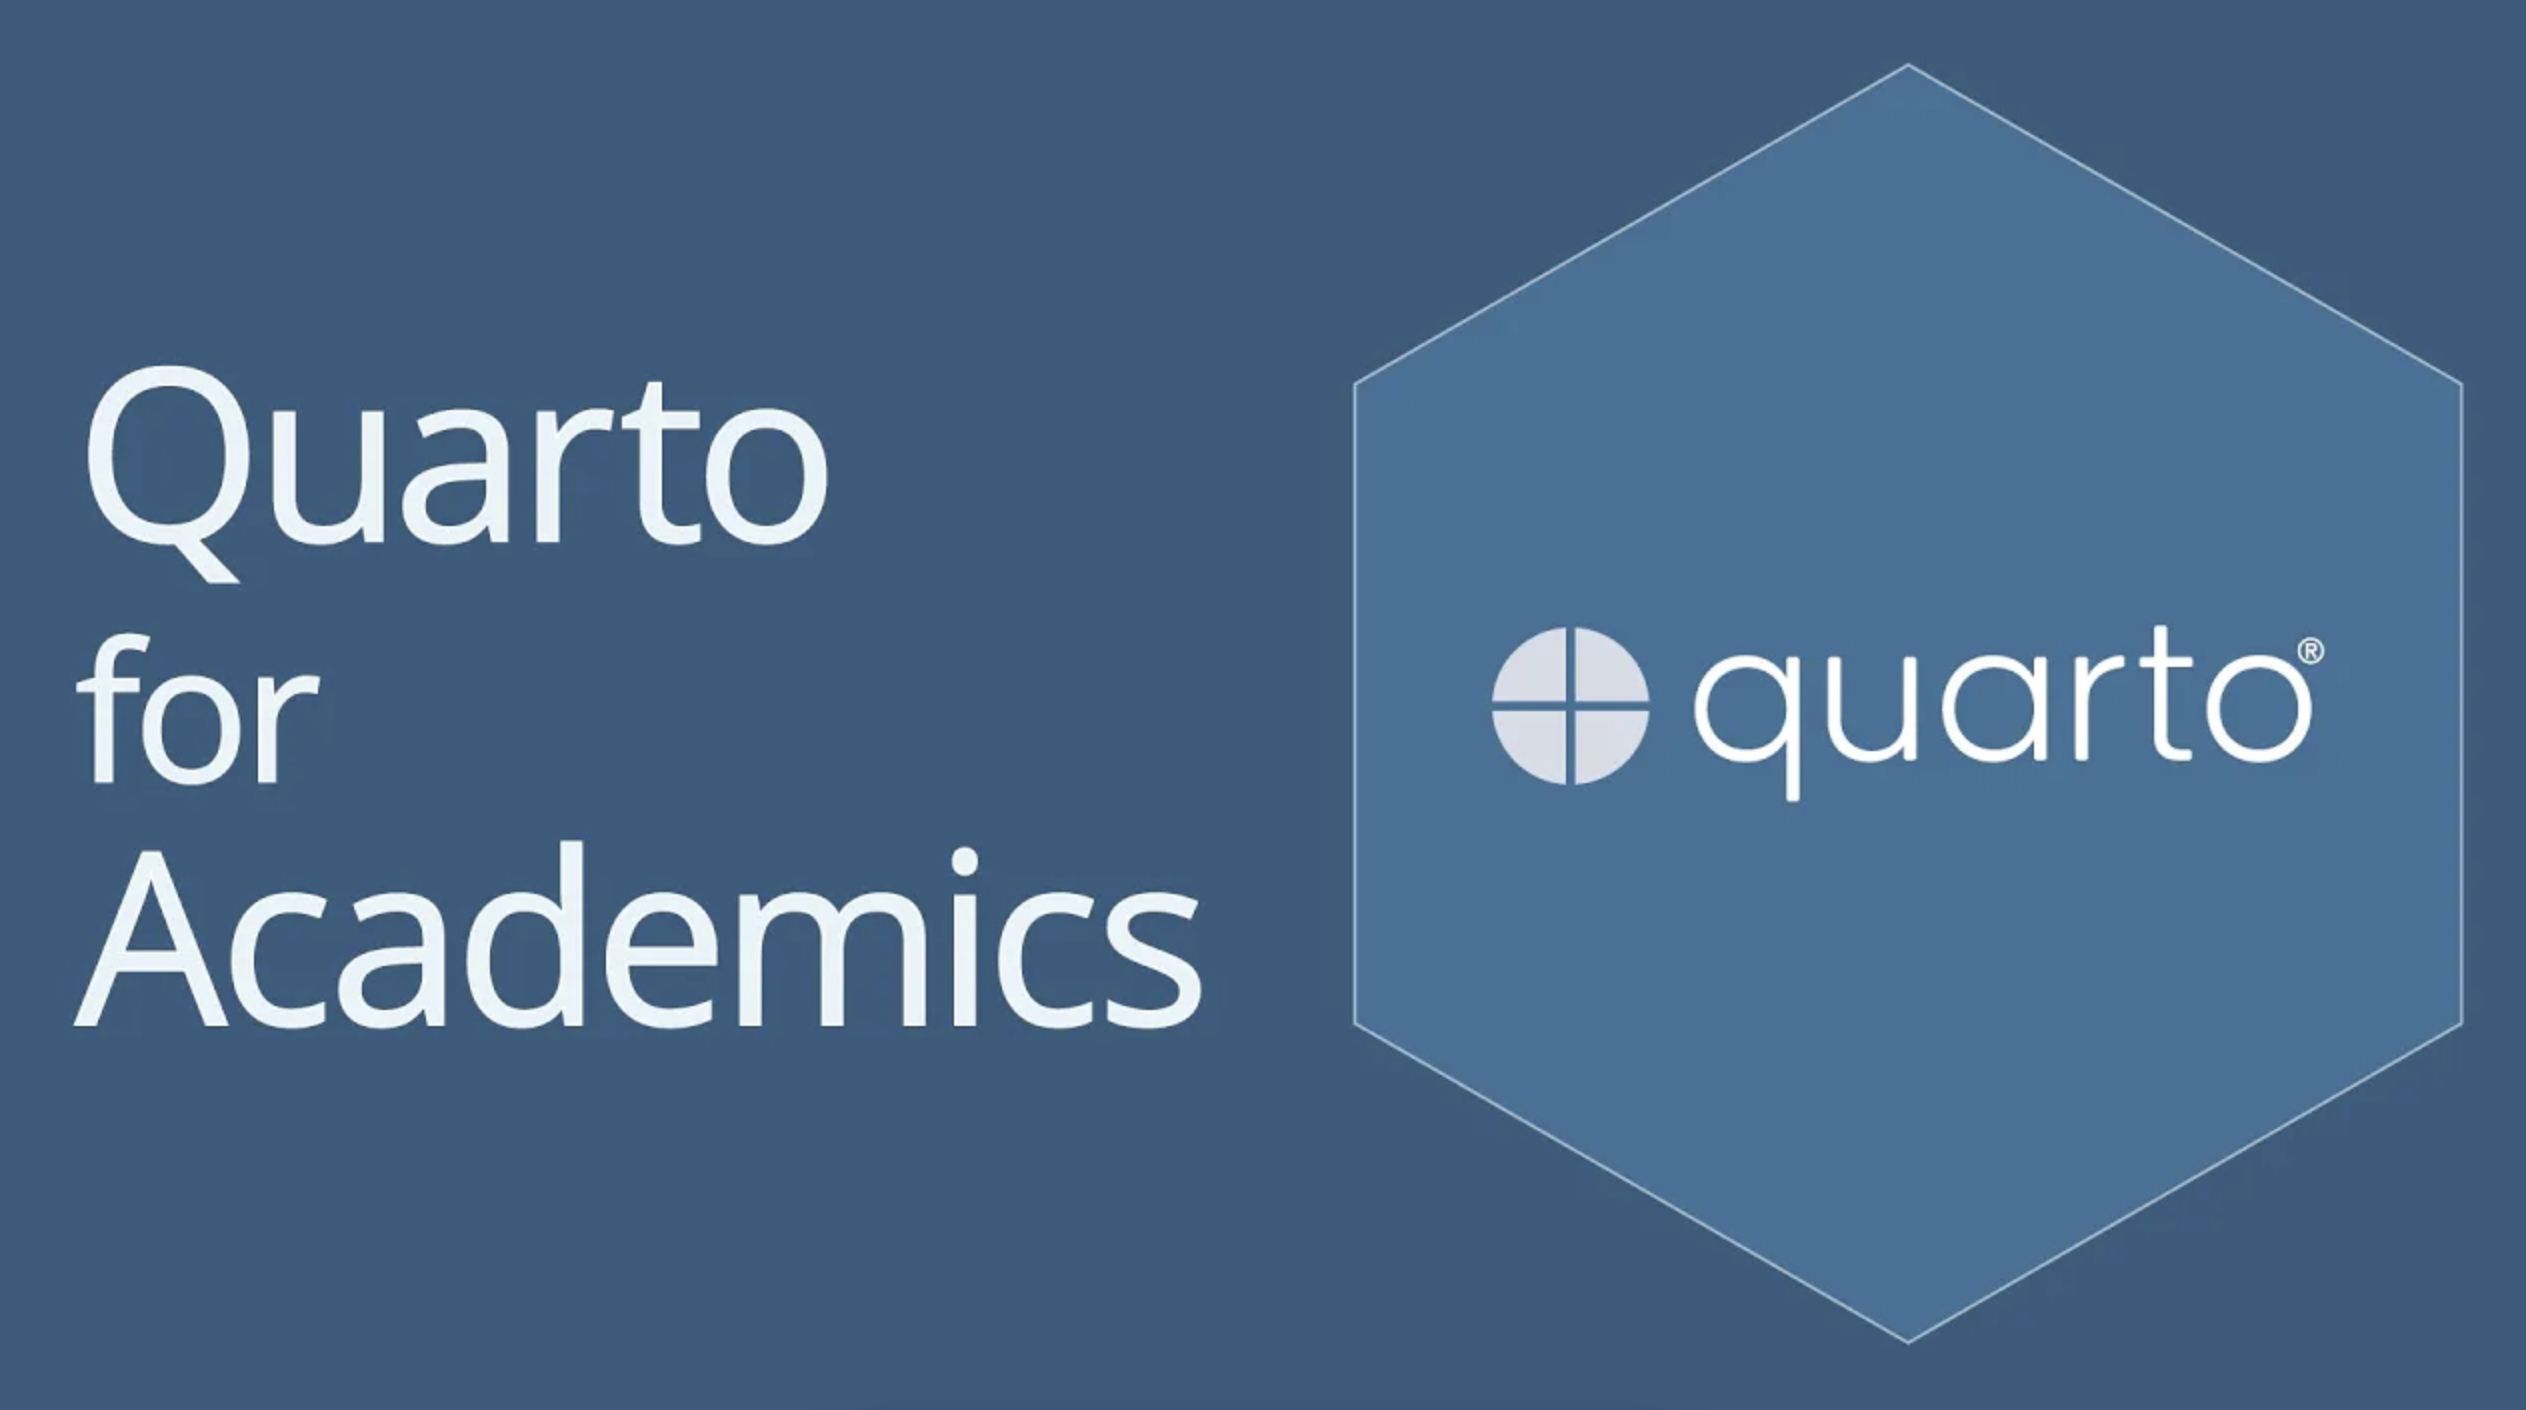 Logo Quarto sur fond bleu et titre de la vidéo - Quarto pour les académiciens